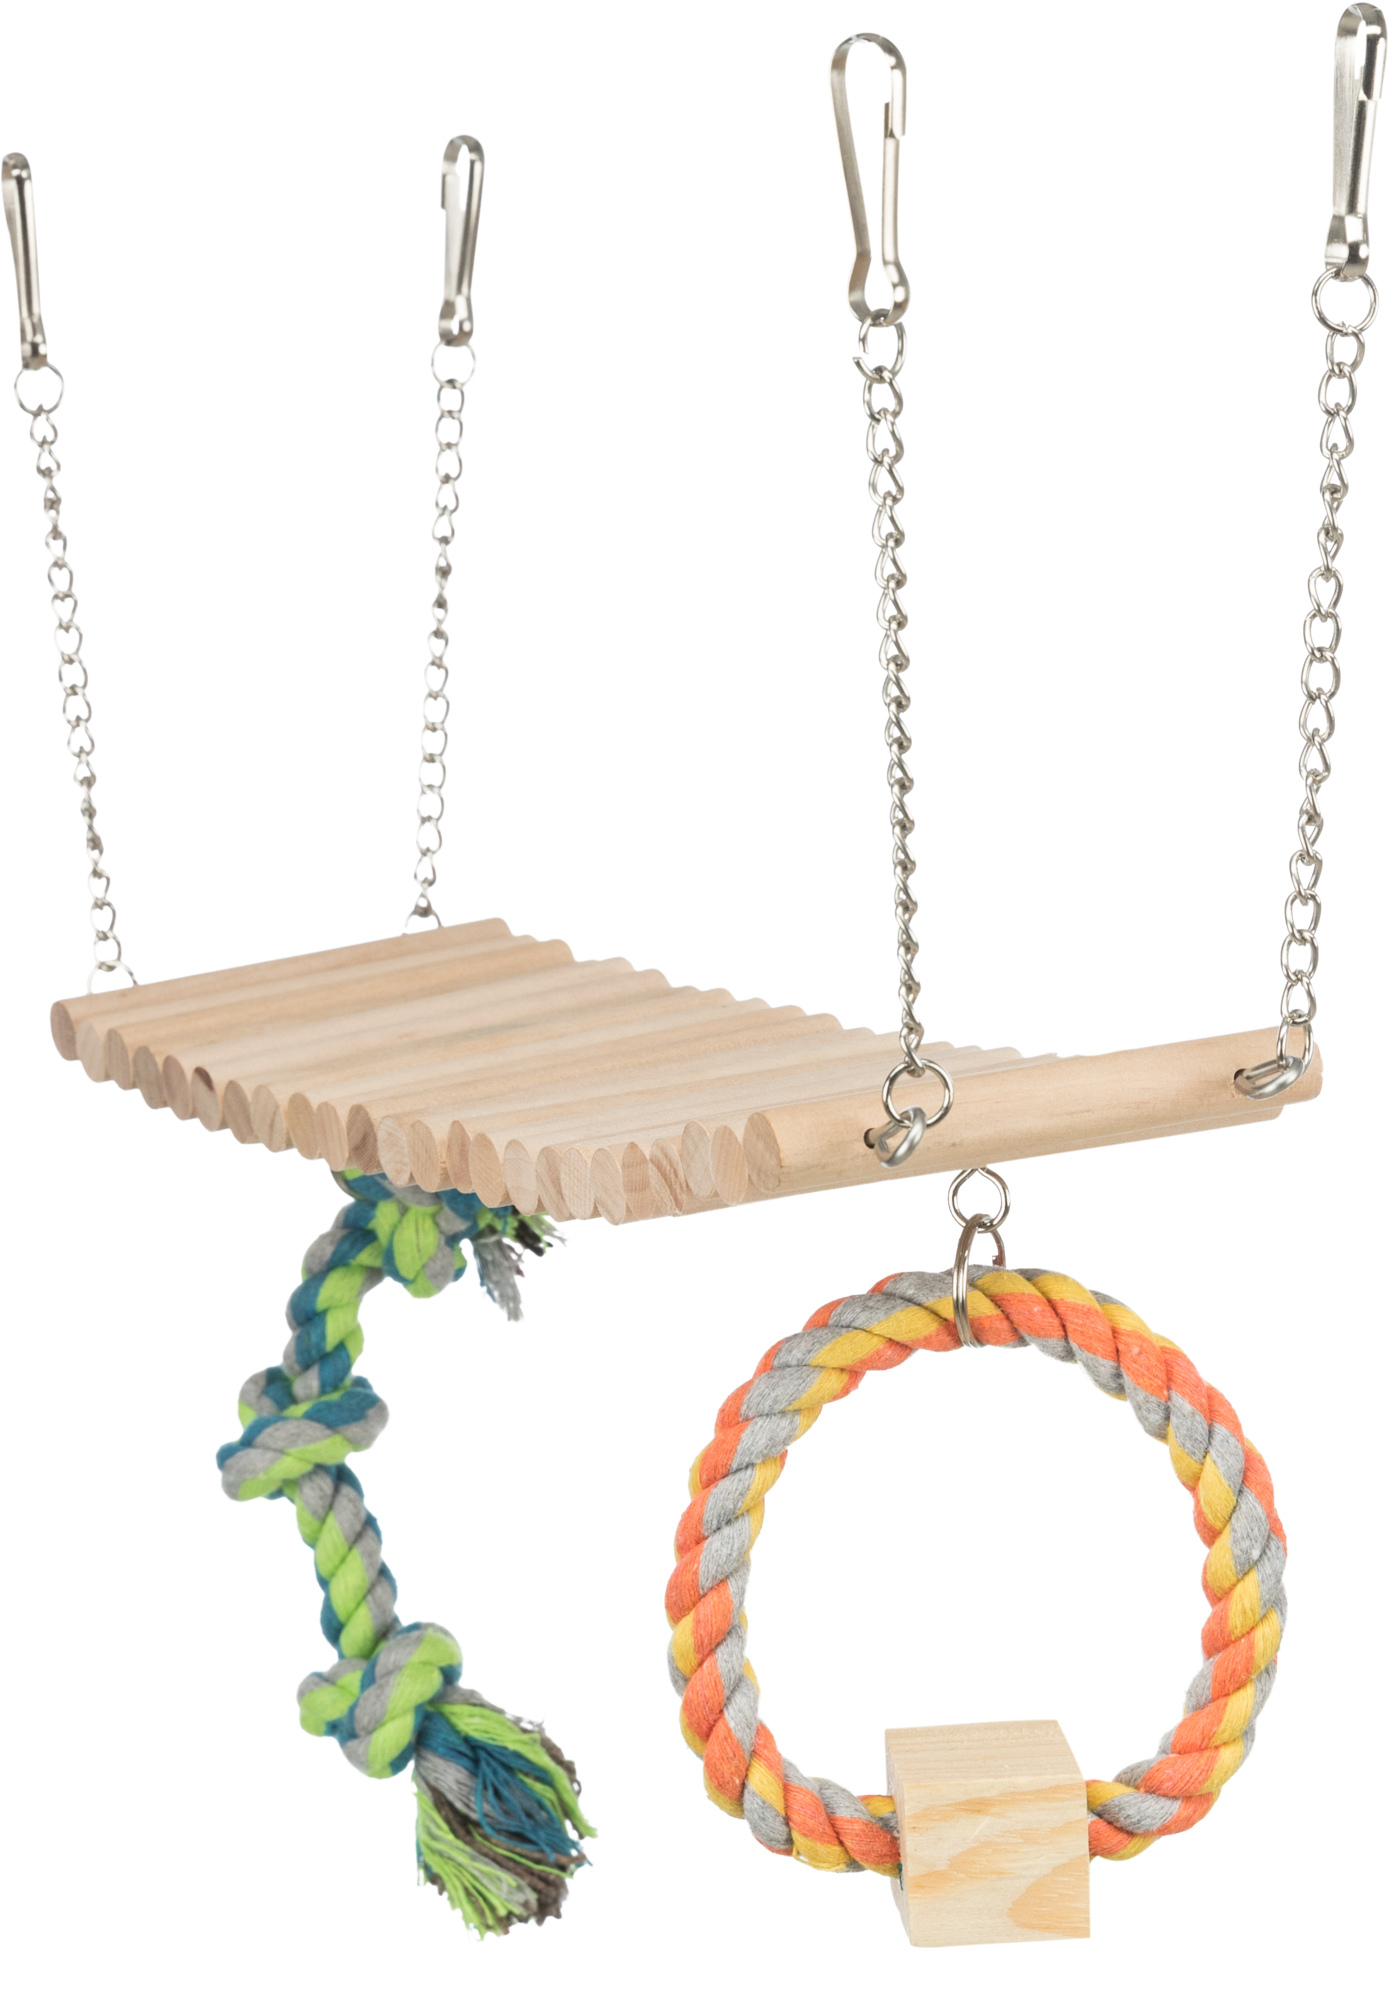 Pont suspendu en bois avec corde et jouet pour rongeur